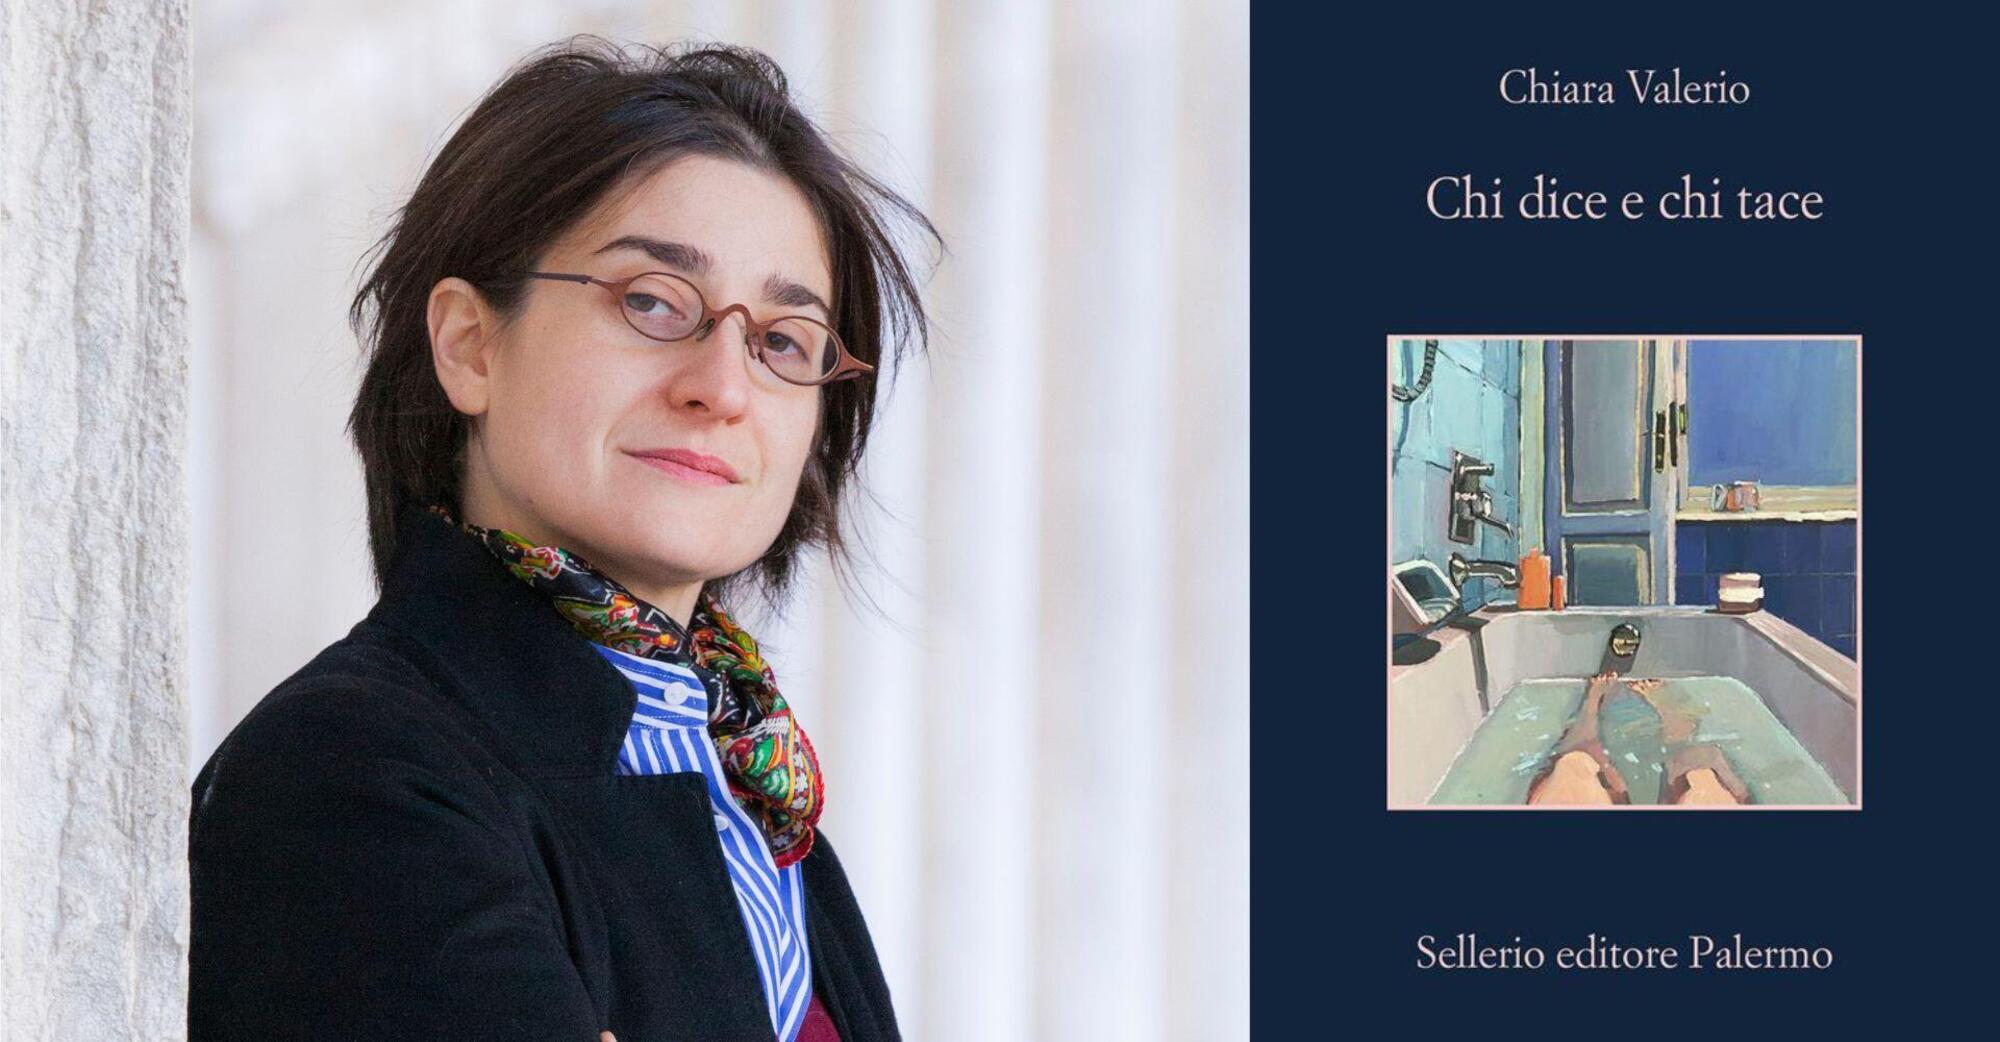 Chiara Valerio e il suo libro candidato al Premio Strega, Chi dice e chi tace (Sellerio)